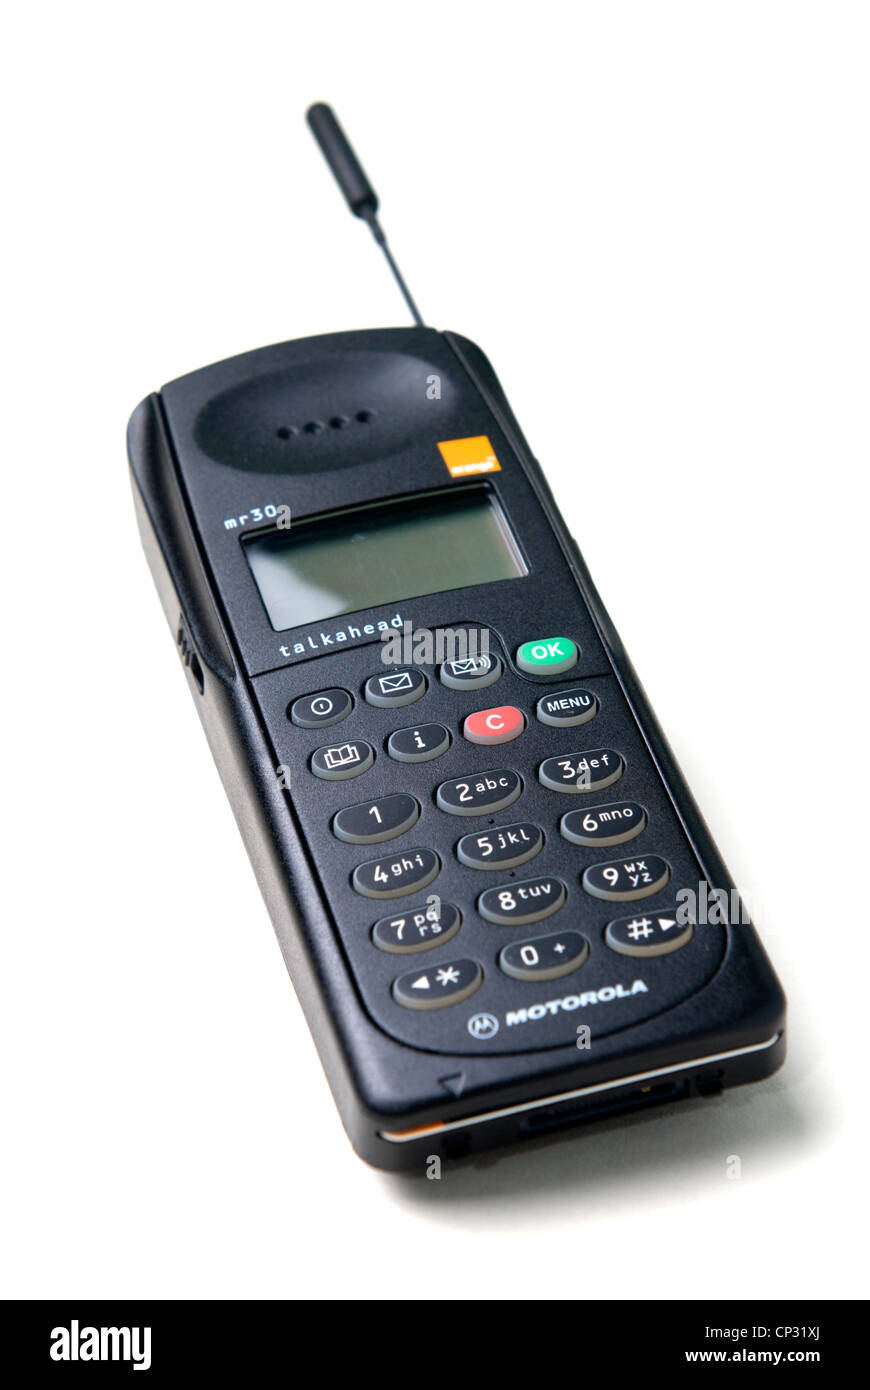 Allgemeines Bild eines Motorola mr30 Mobiltelefons startete im Jahr 1994  mit der Werbung von "kleinen ordentlich leichte Handy"! Stockfotografie -  Alamy